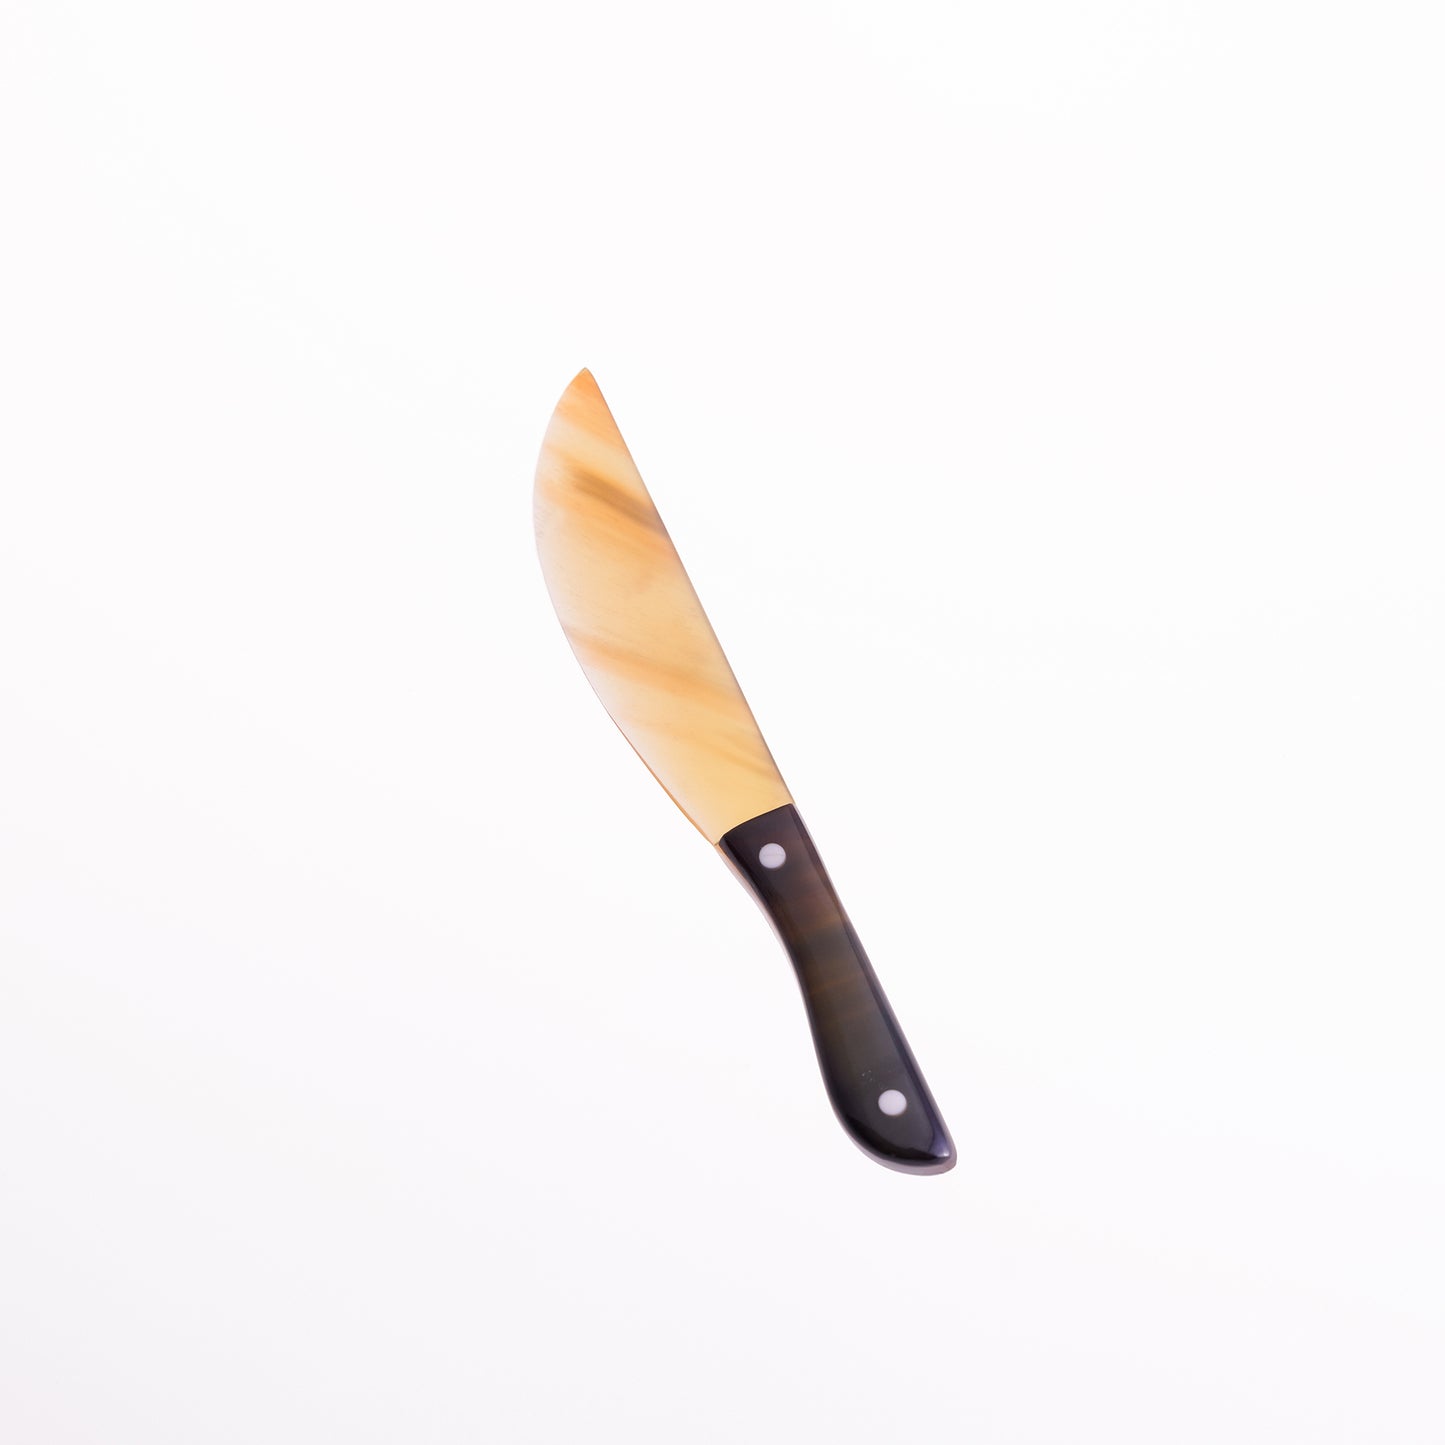 Horn Butter Knife - Natural Horn/Black Handle